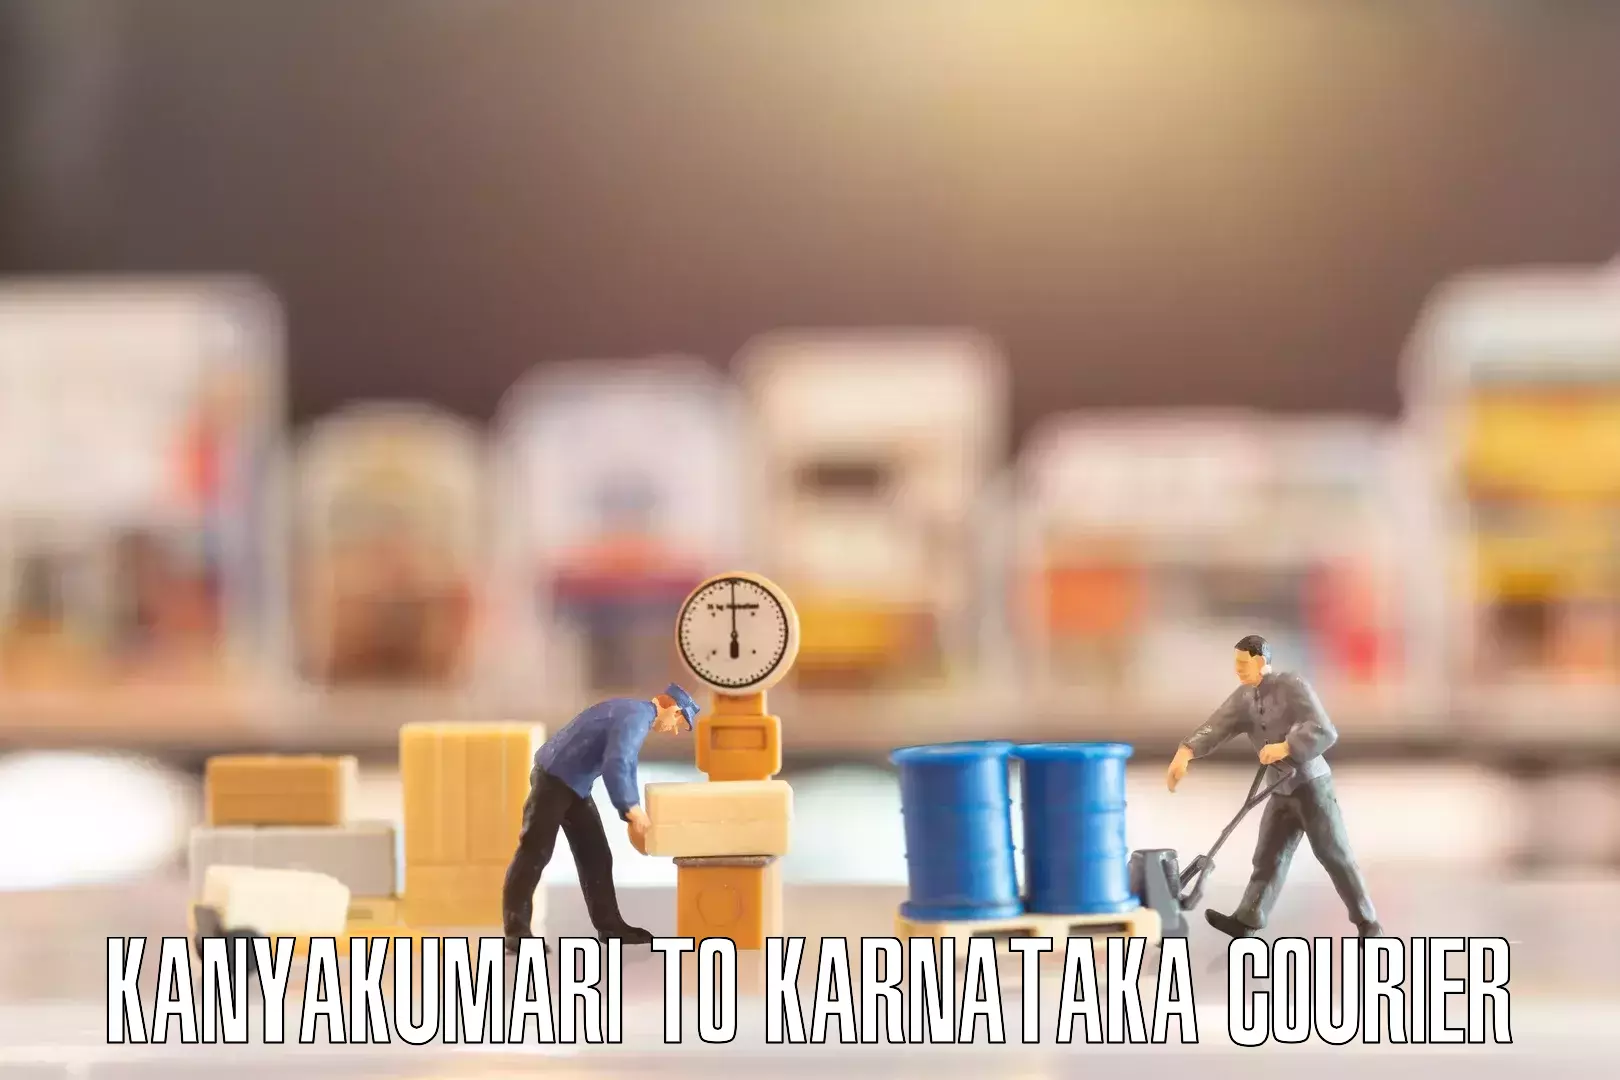 Expert furniture movers Kanyakumari to Karnataka